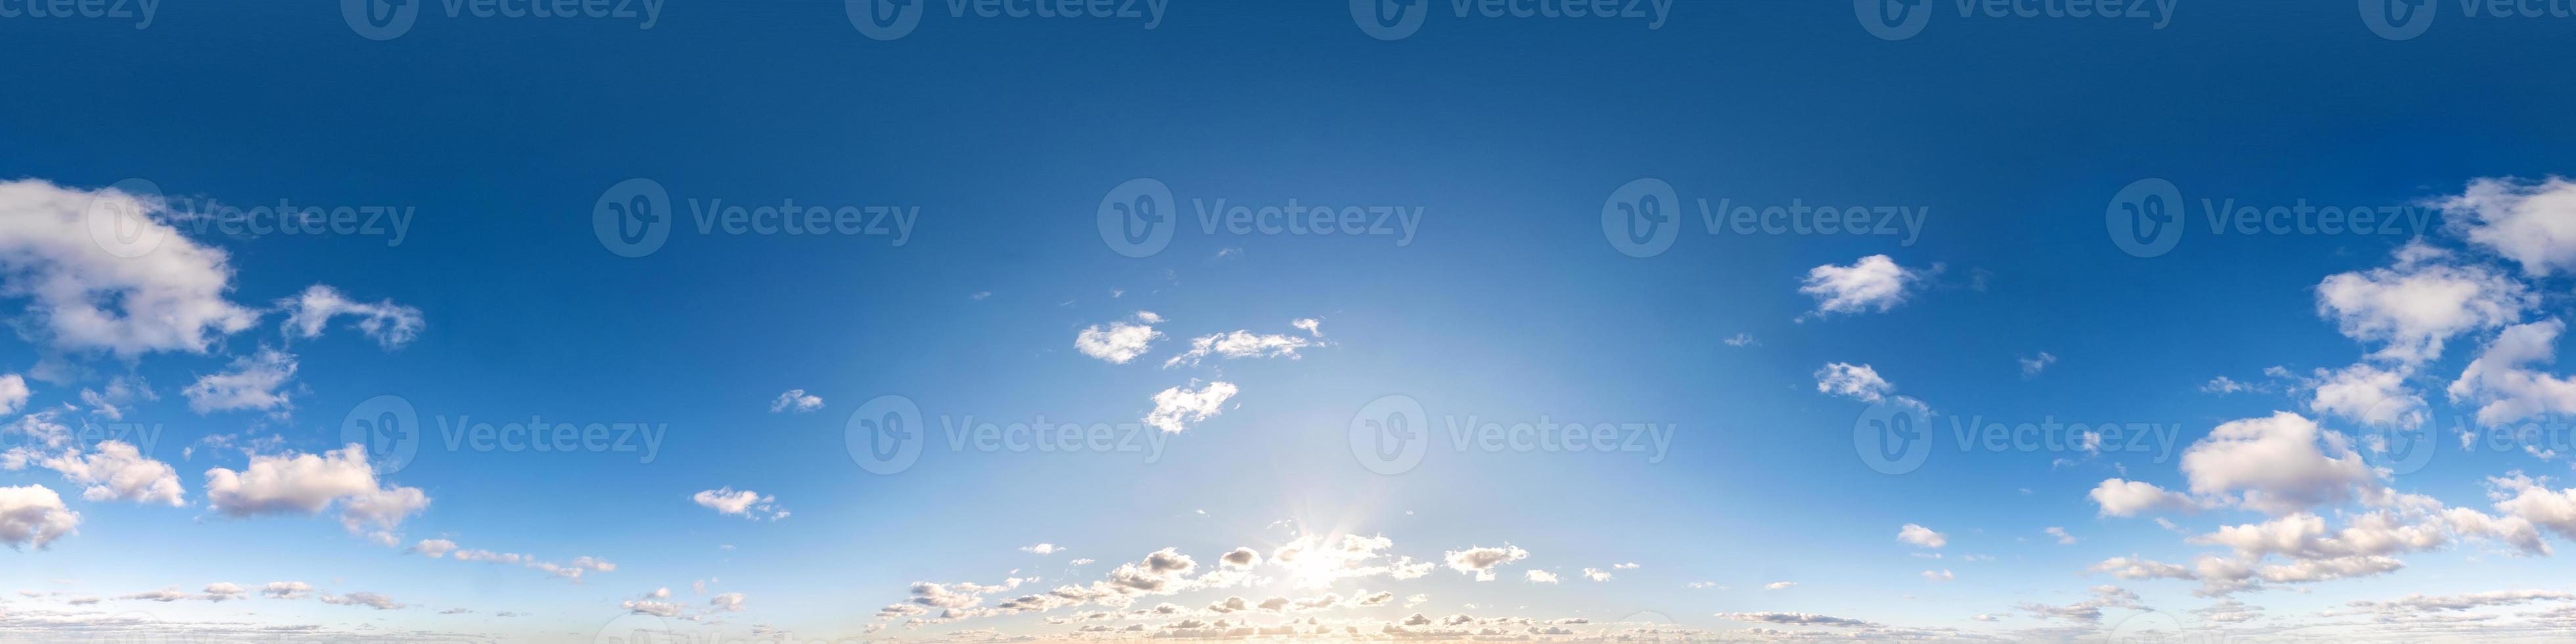 panorama hdri senza soluzione di continuità vista angolare a 360 gradi cielo blu con bellissime nuvole cumuliformi soffici con zenit per l'uso in grafica 3d o sviluppo di giochi come sky dome o modifica riprese con drone foto